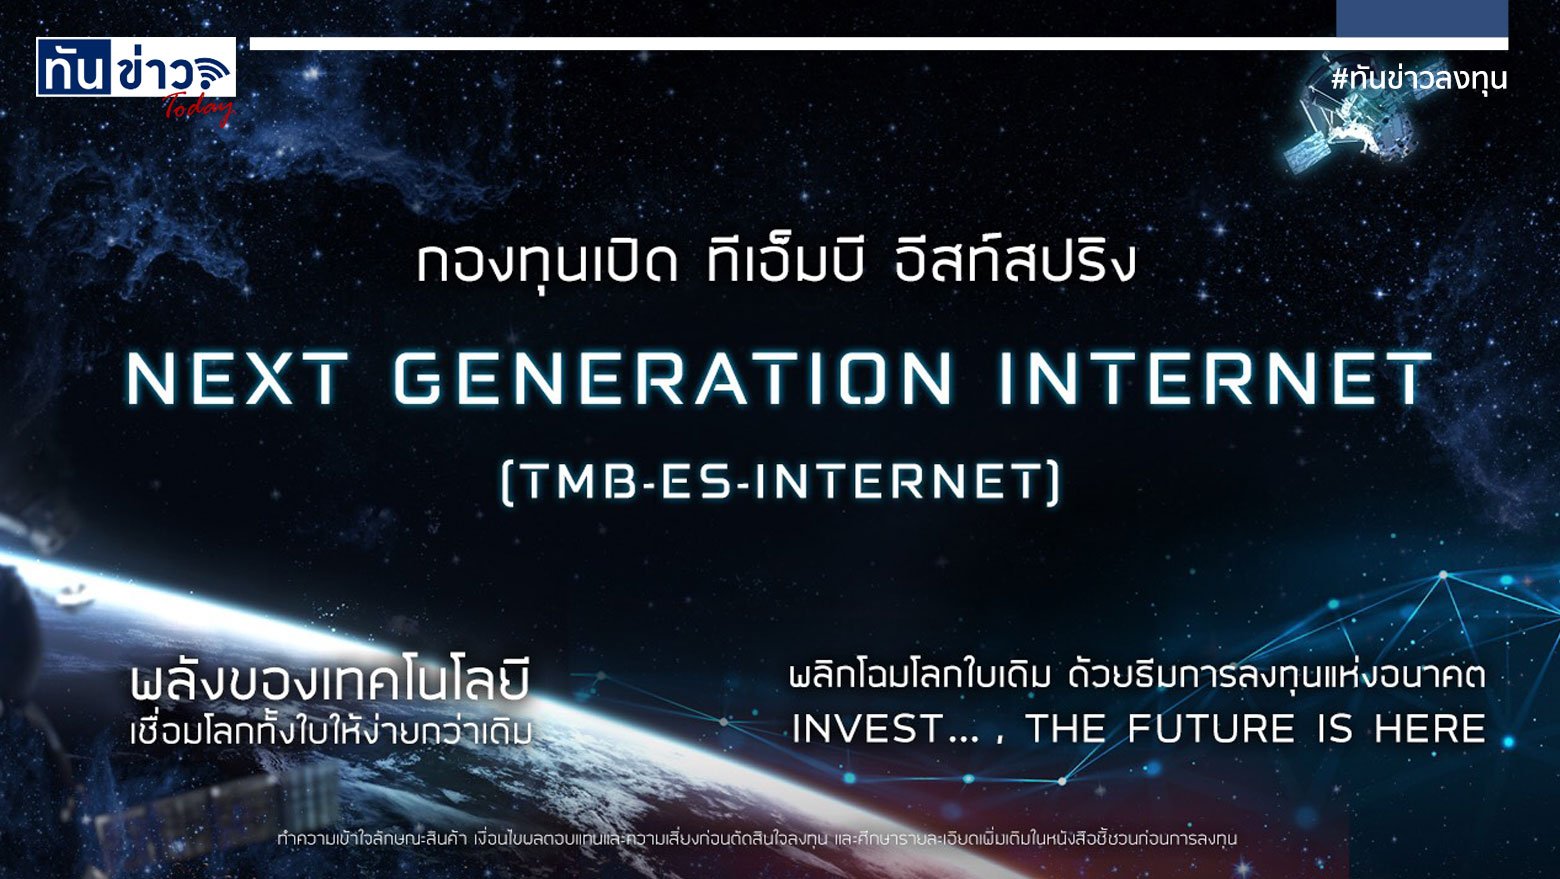 กองทุนเปิดทีเอ็มบี อีสท์สปริง Next Generation Internet (TMB-ES-INTERNET)